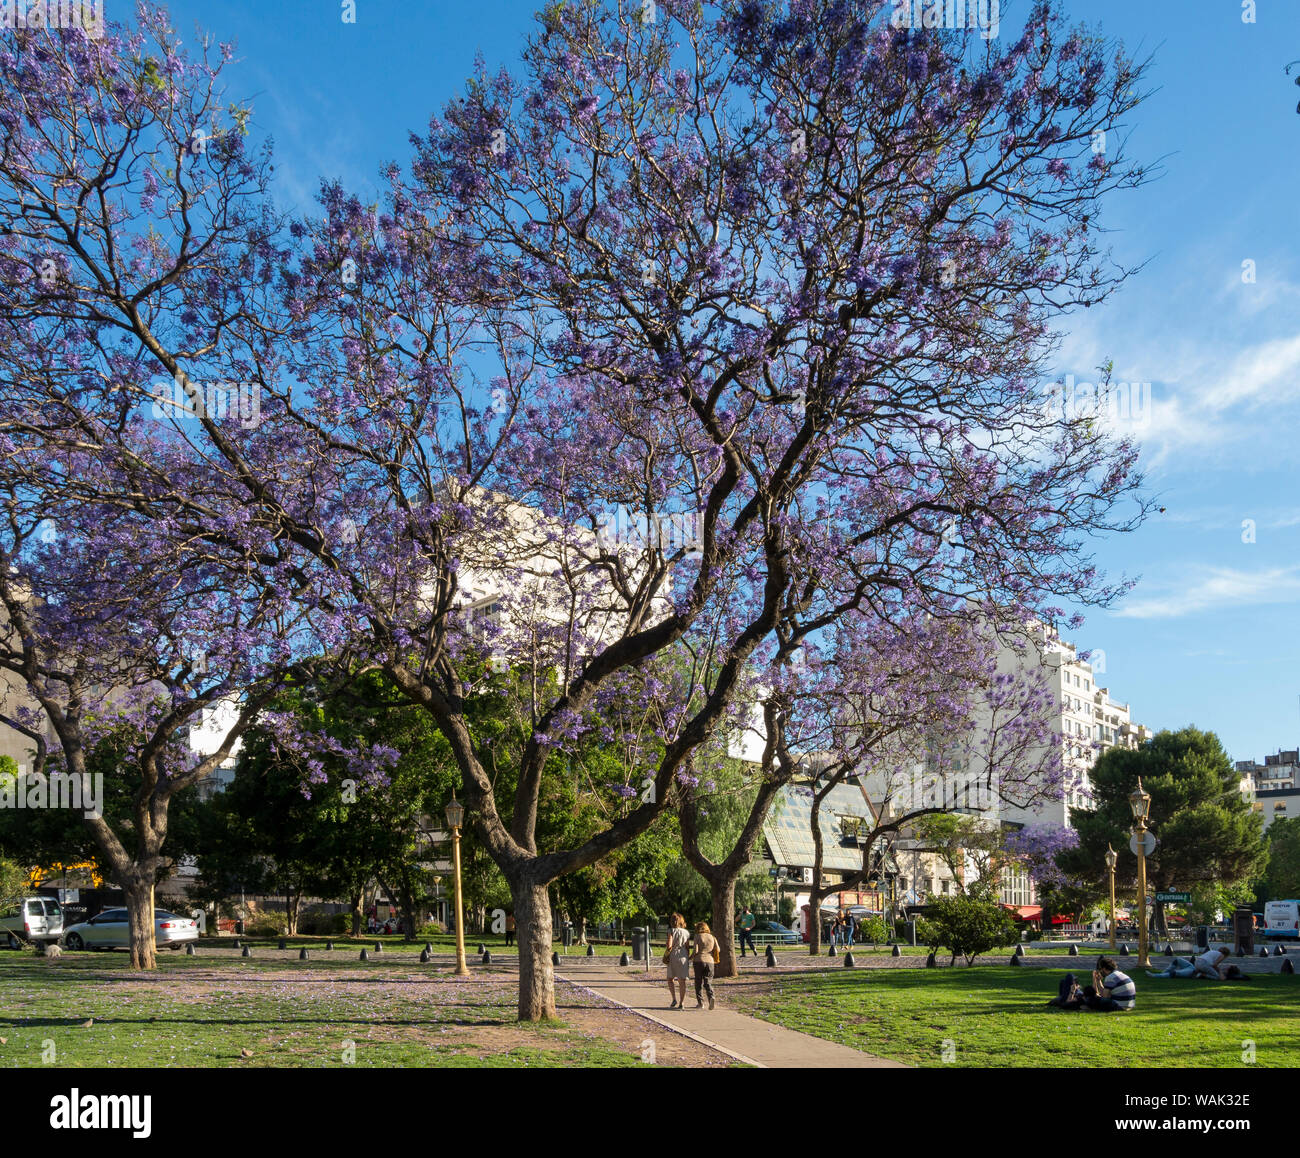 Park Plaza Intendente Torcuato de Alvear près de cimetière de Recoleta. Buenos Aires, Argentine. (Usage éditorial uniquement) Banque D'Images